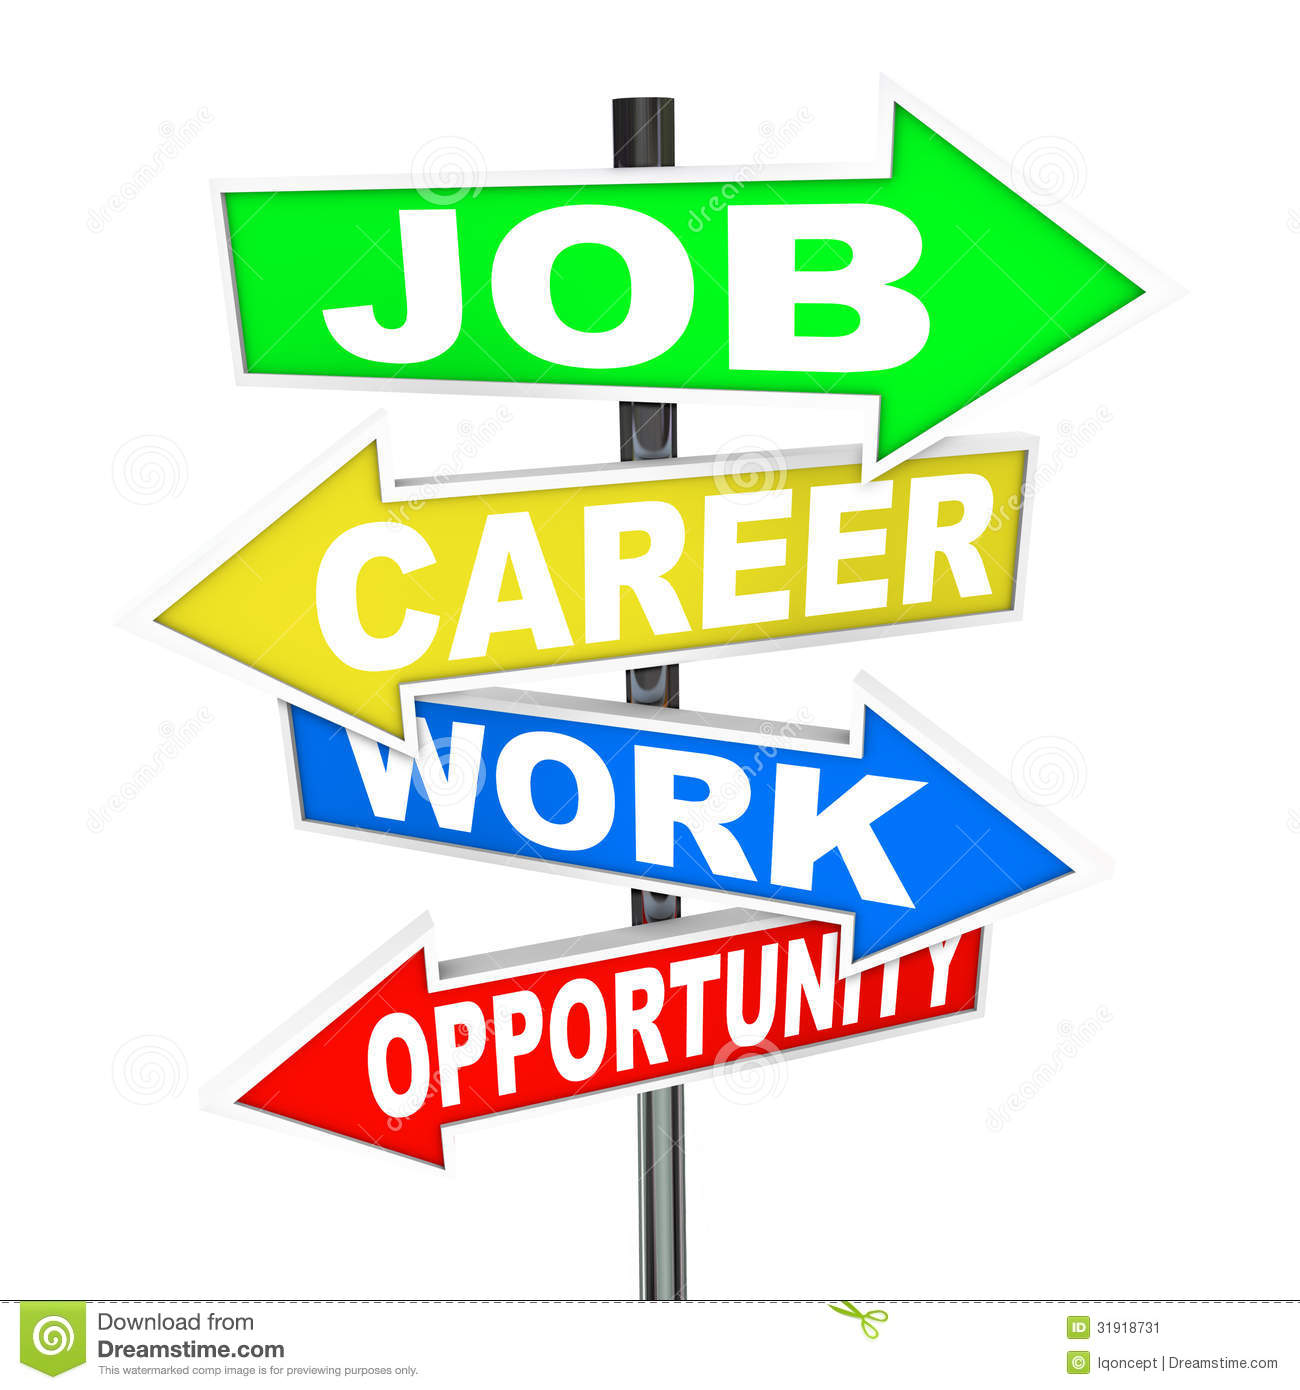 Job clipart career guidance, Job career guidance Transparent.